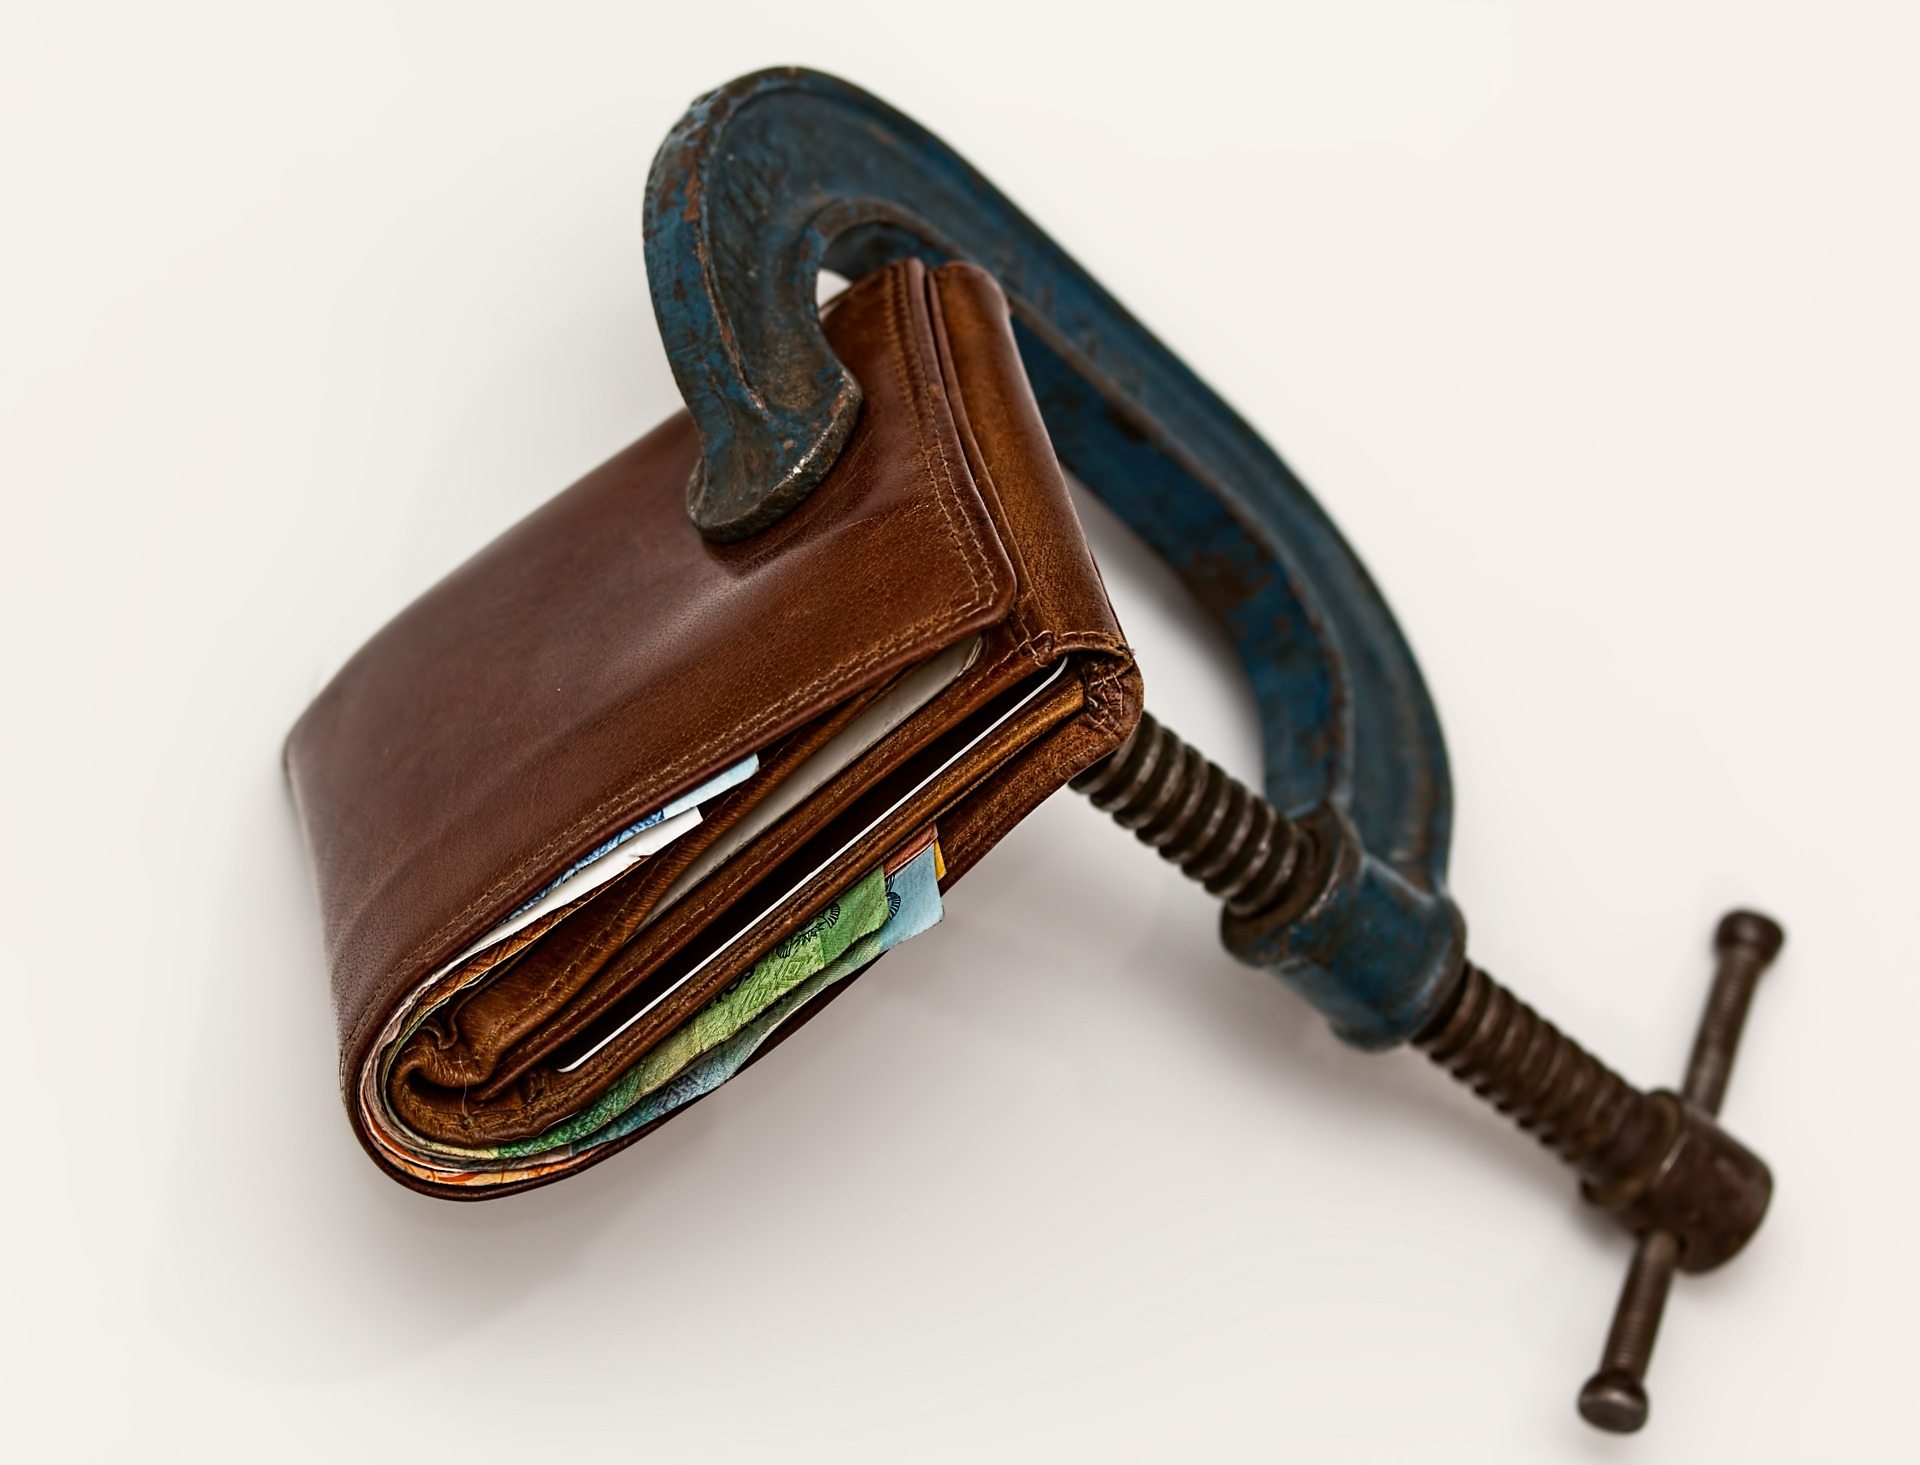 Debt Pixabay credit-squeeze-522549_1920